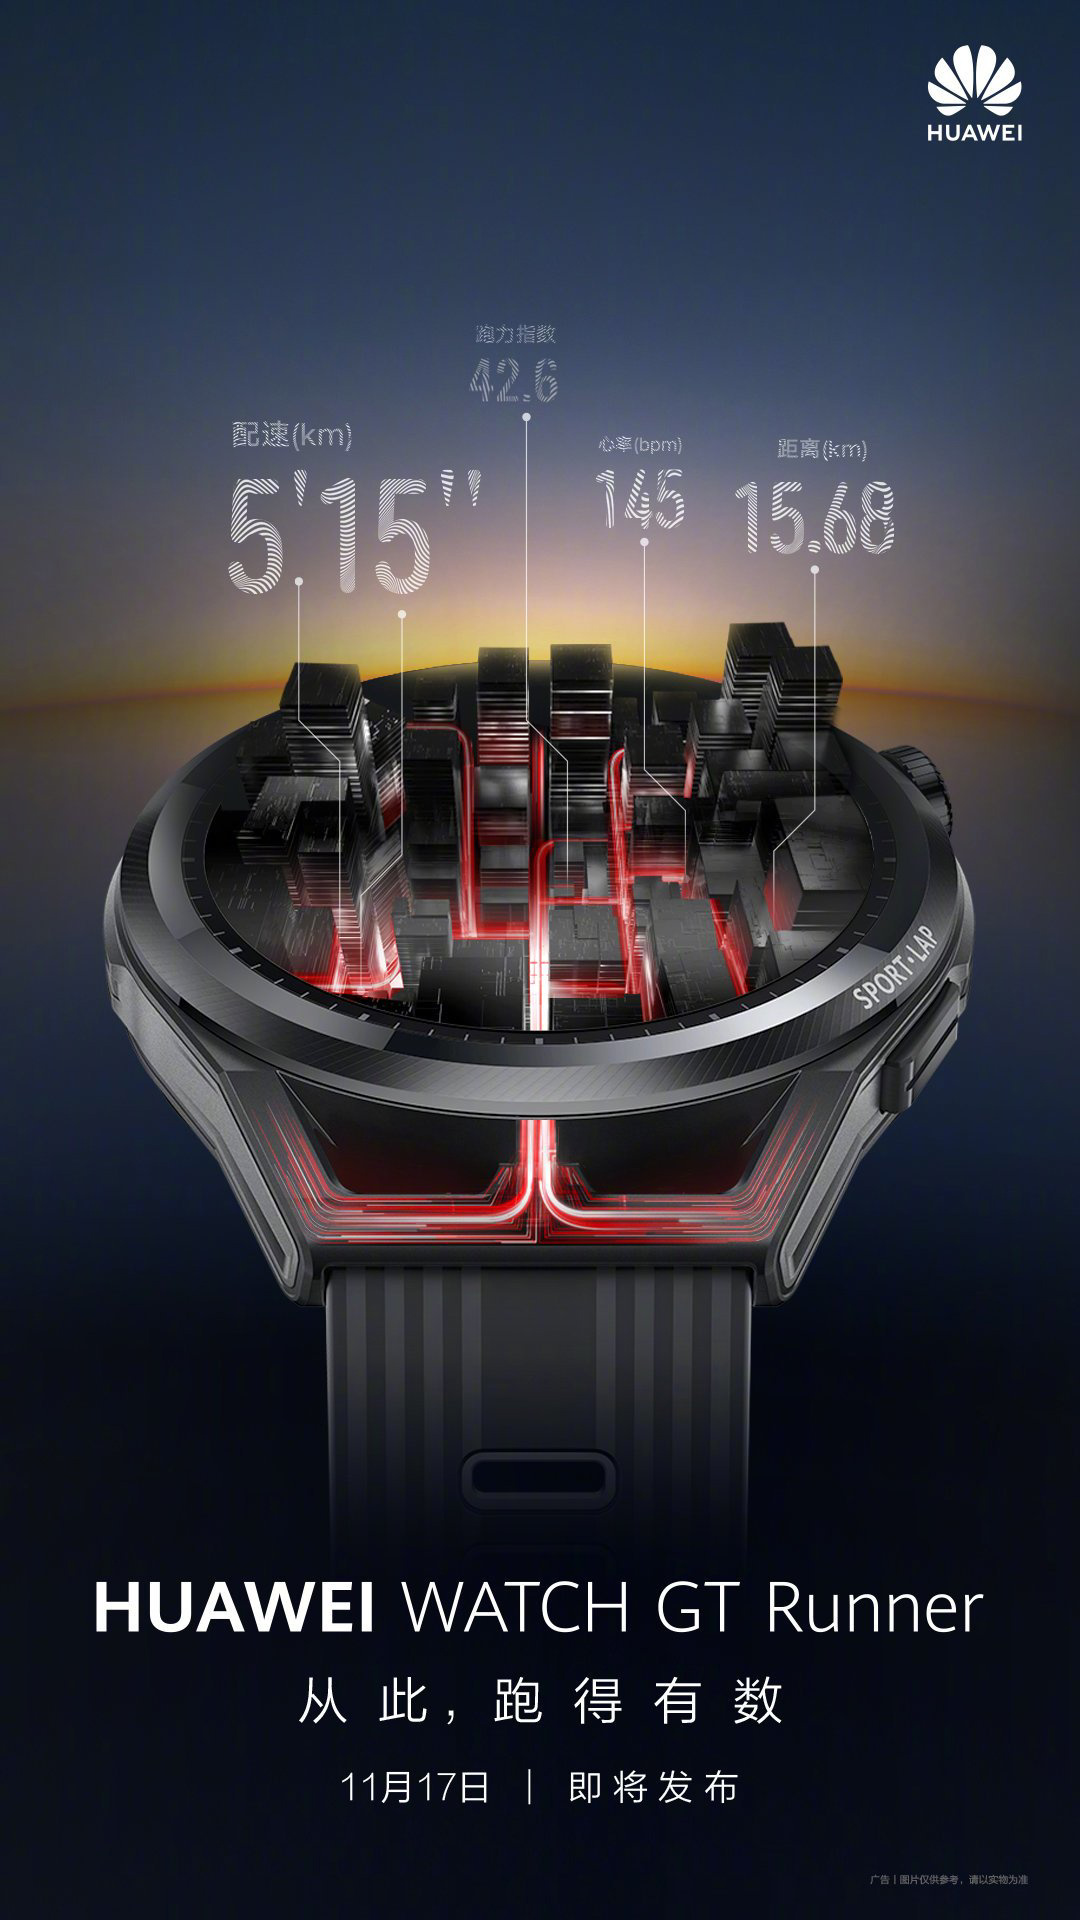 Huawei Watch GT Runner Main